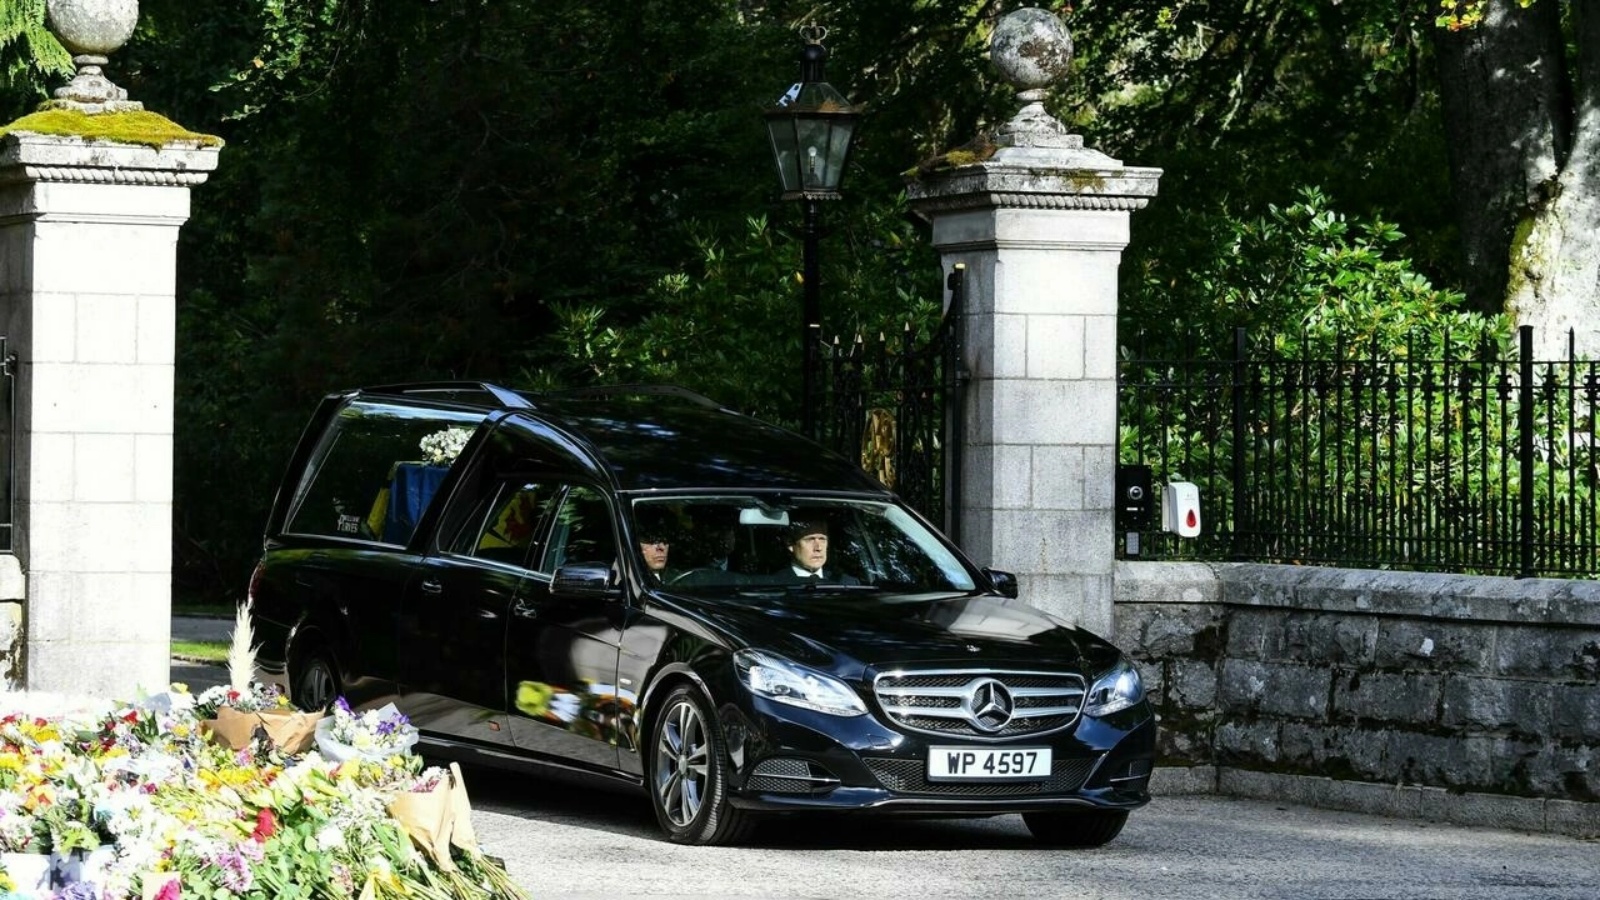 السيارة التي تقل نعش الملكة إليزابيث الثالثة يغادر قصر بالمورال الملكي في استكلندا في 11 سبتمبر 2022